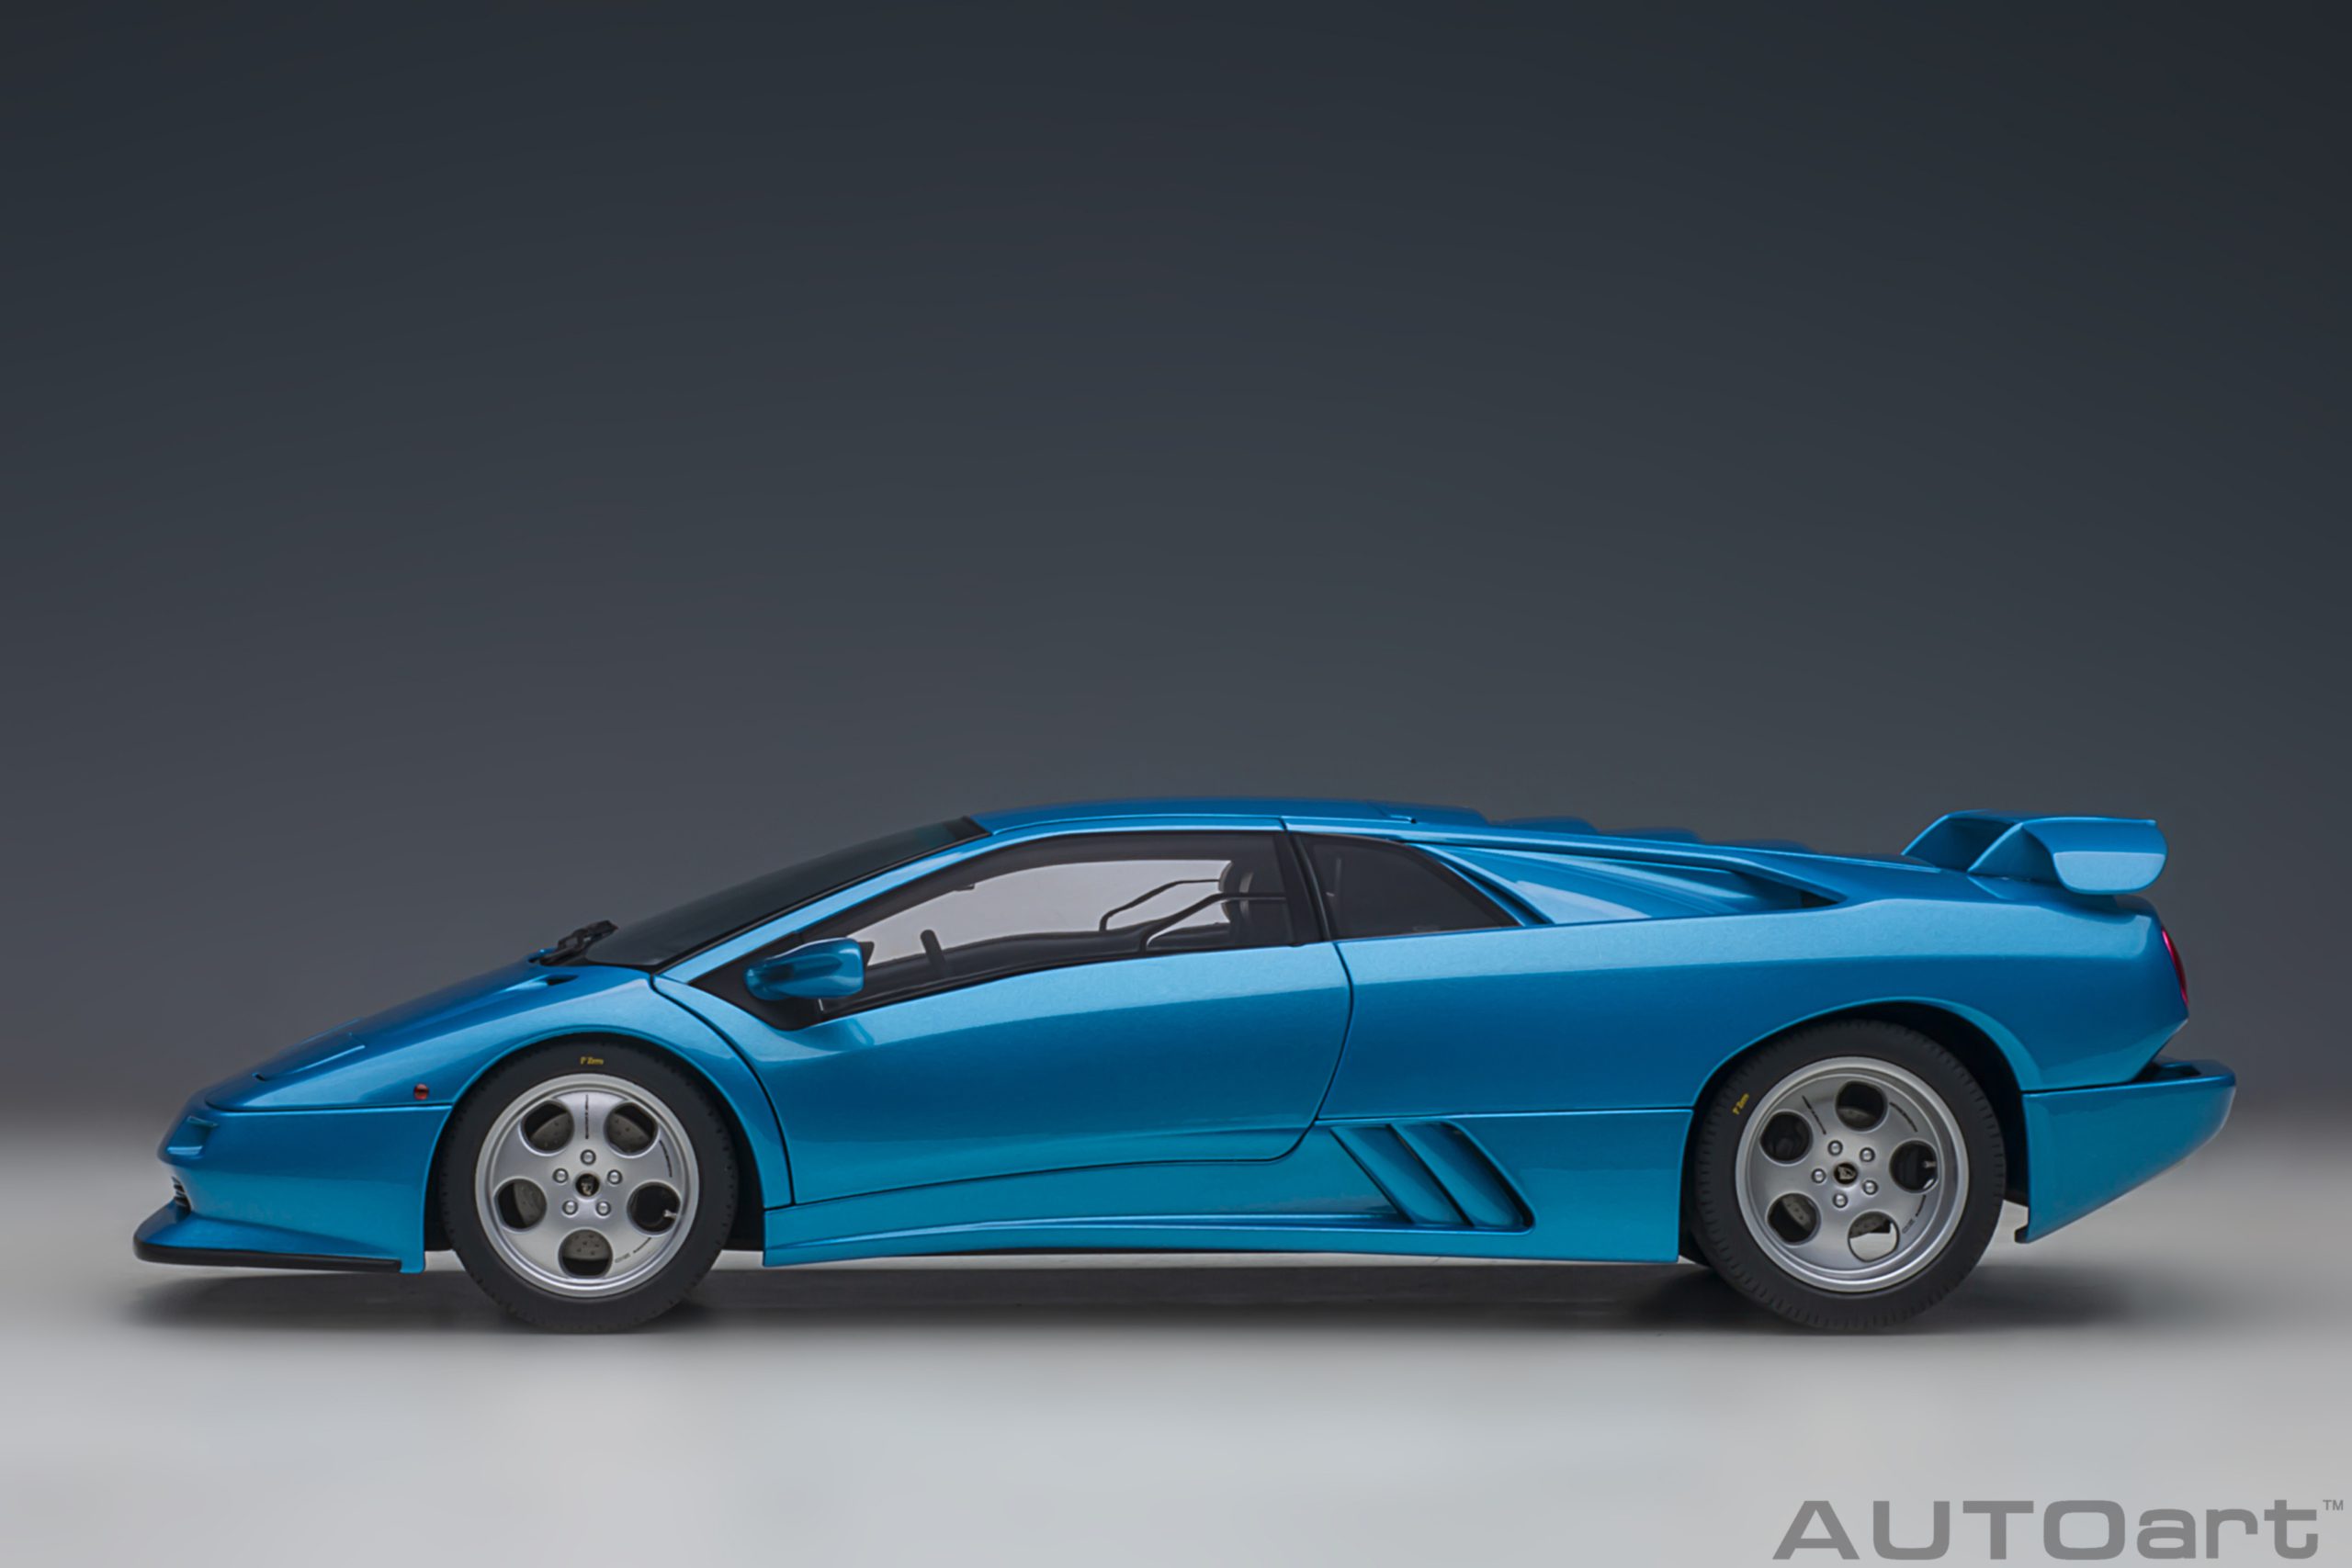 autoart-79156-3-Lamborghini-Diablo-SE30-30th-Anniversary-Edition-Blu-Sirena-metallic-blue